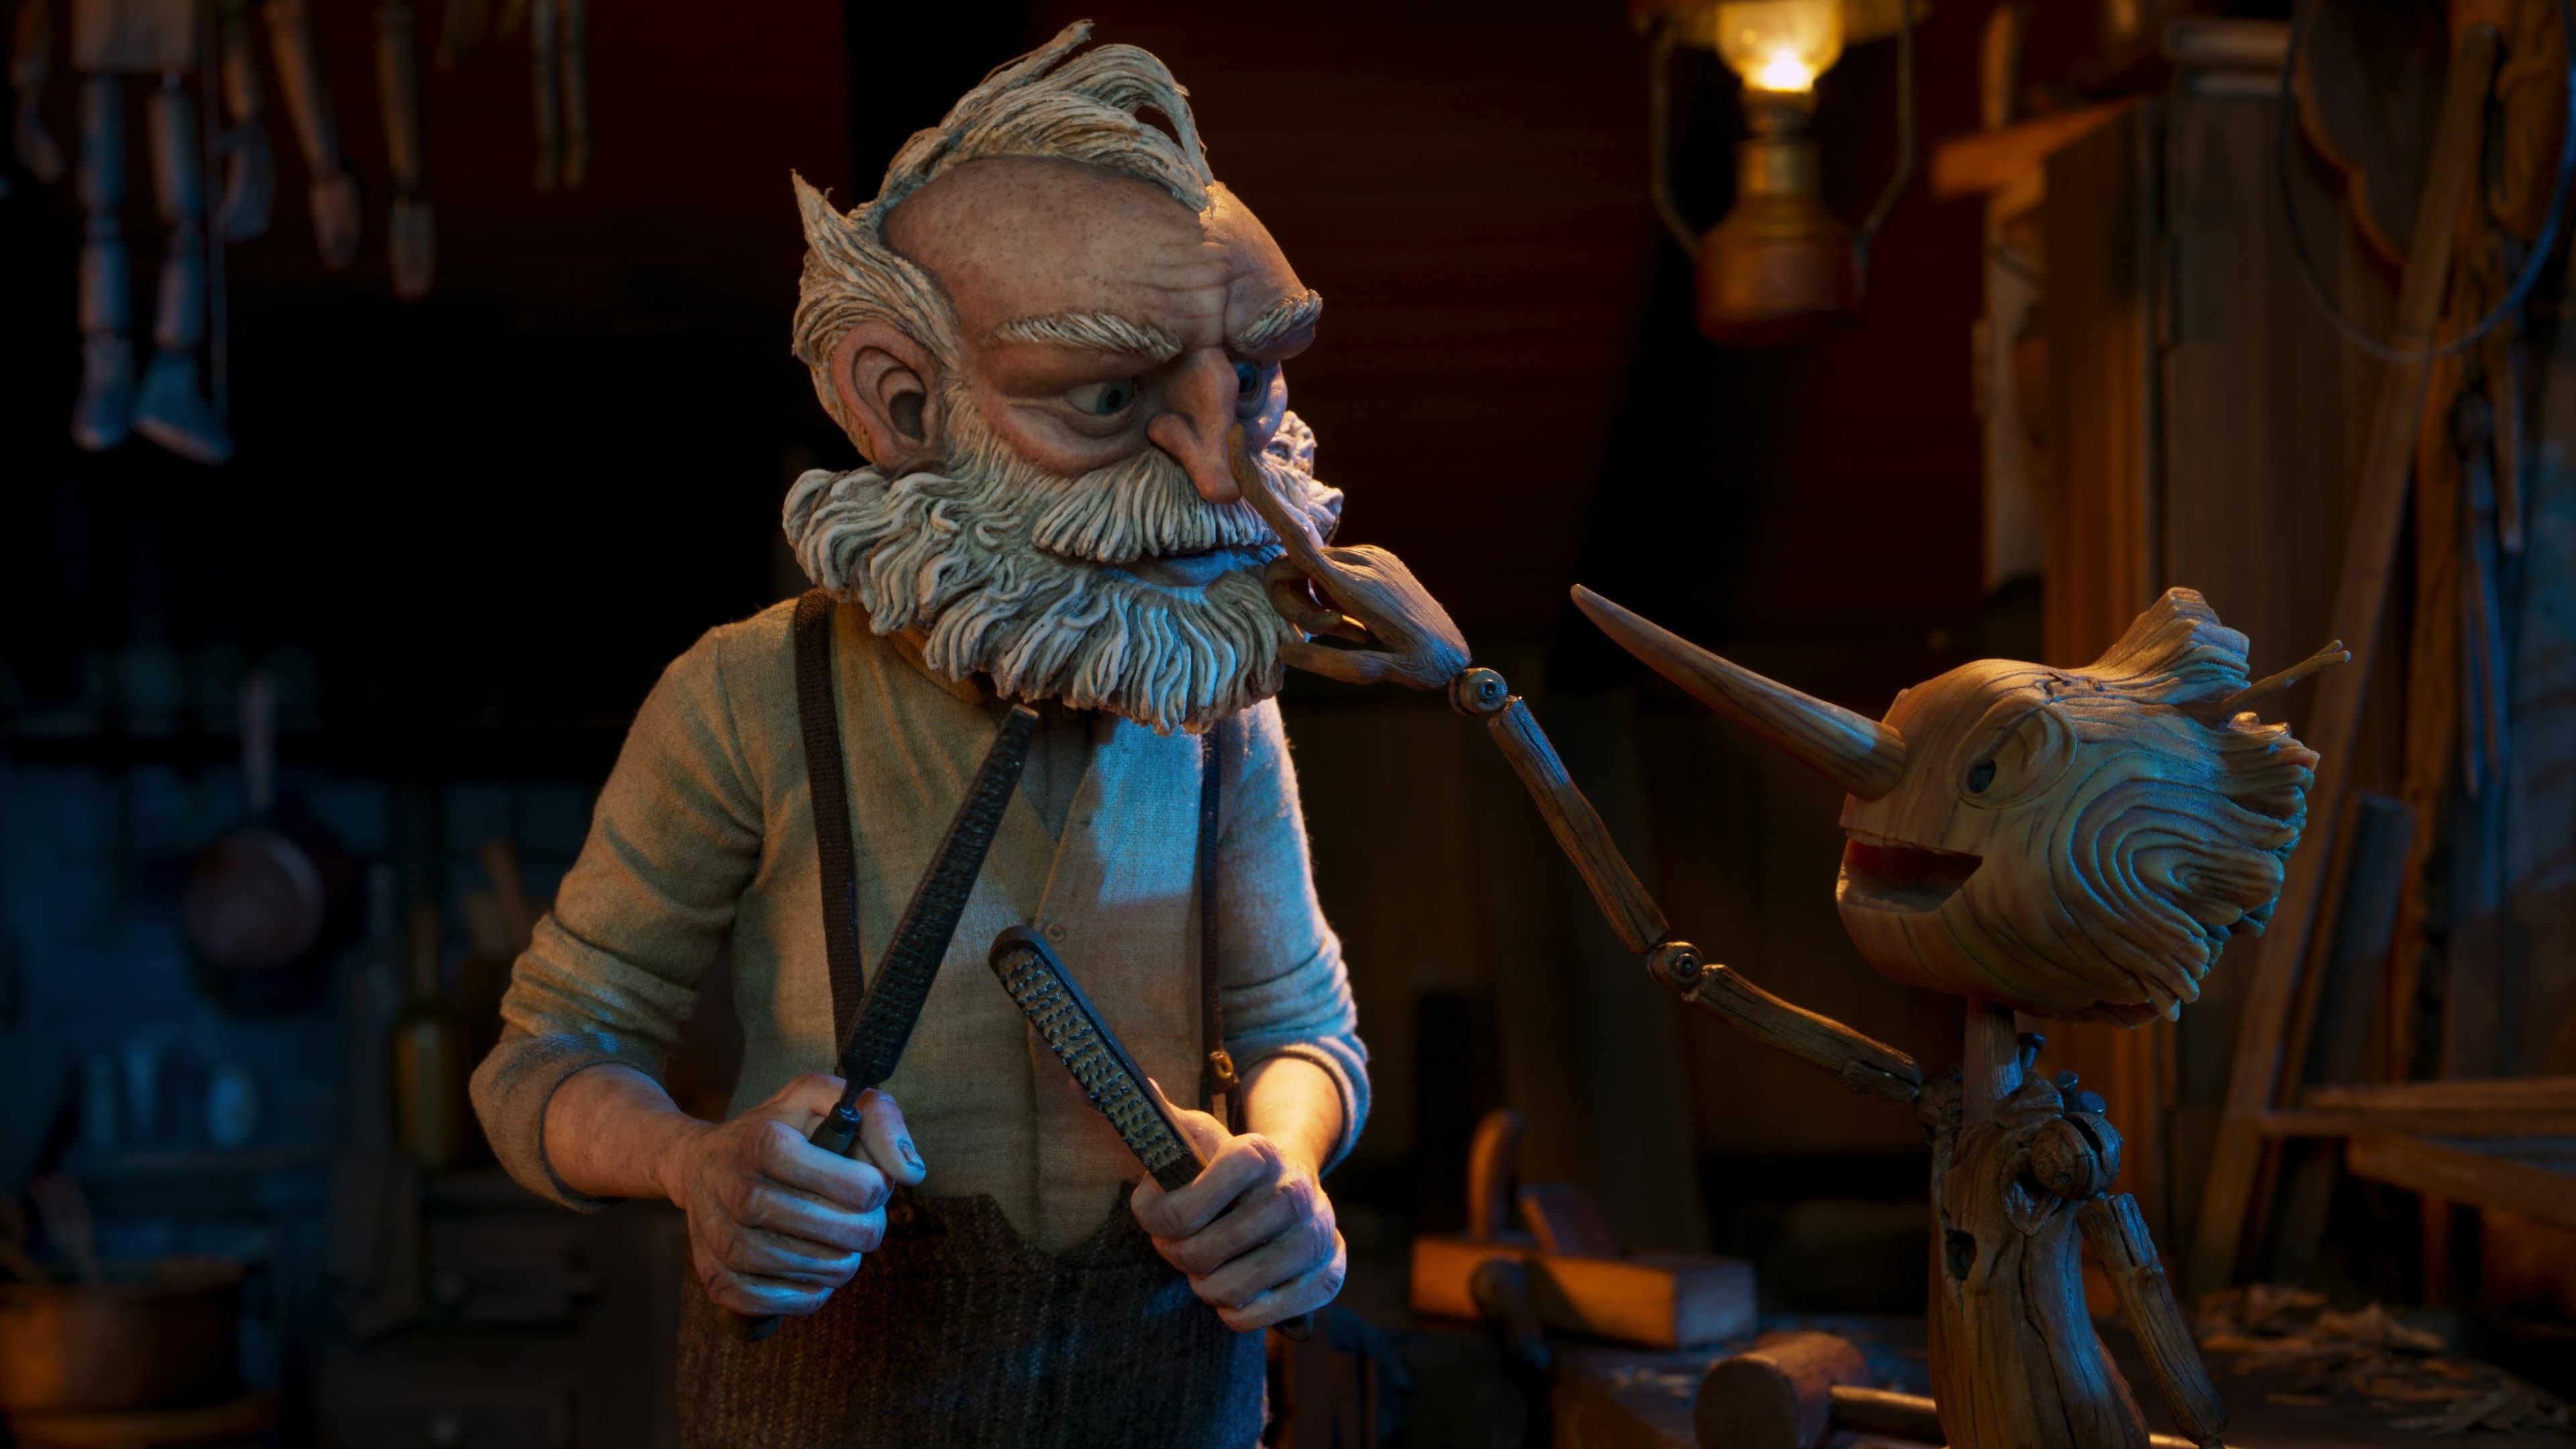 Guillermo del Toro's Pinocchio backdrop